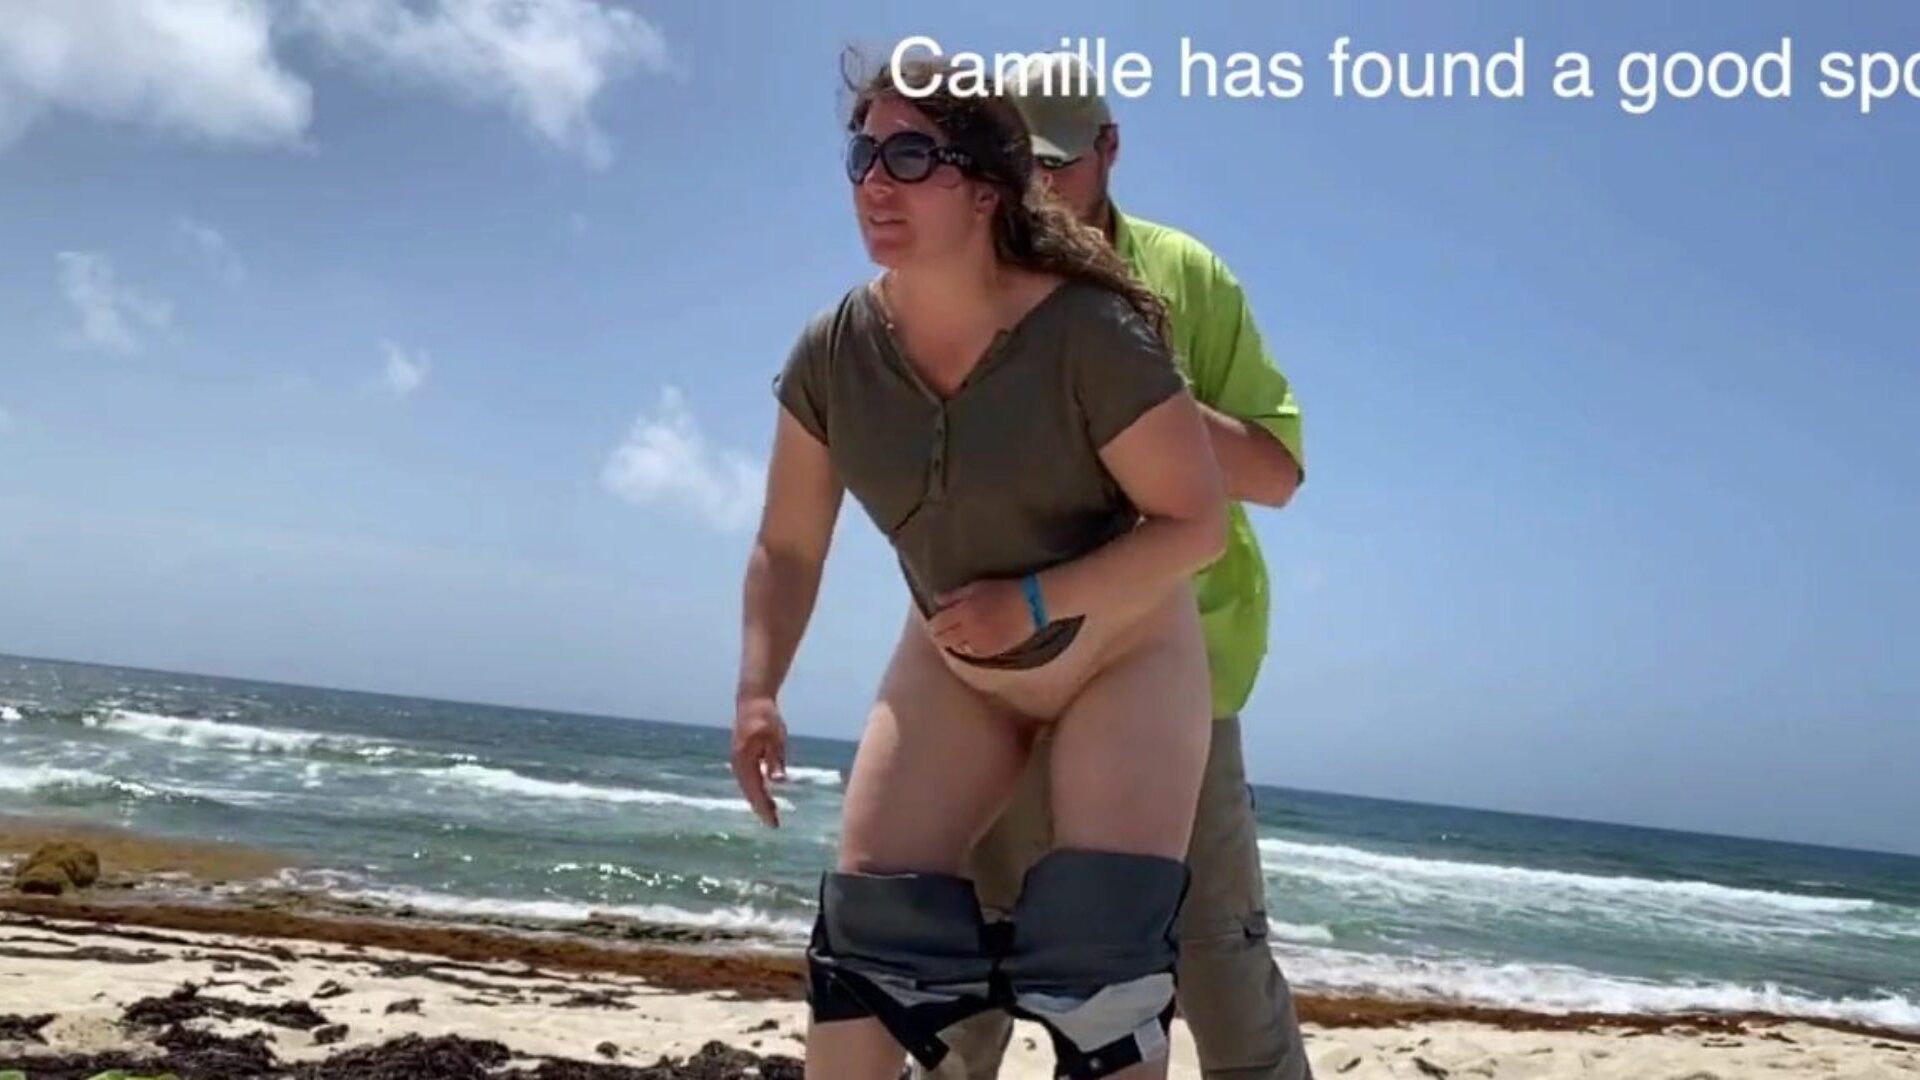 camille megfigyelte, hogy tombol a tengerparton. A camille egy szép helyet talált, néhány ember zajos volt, így mindenki láthatja